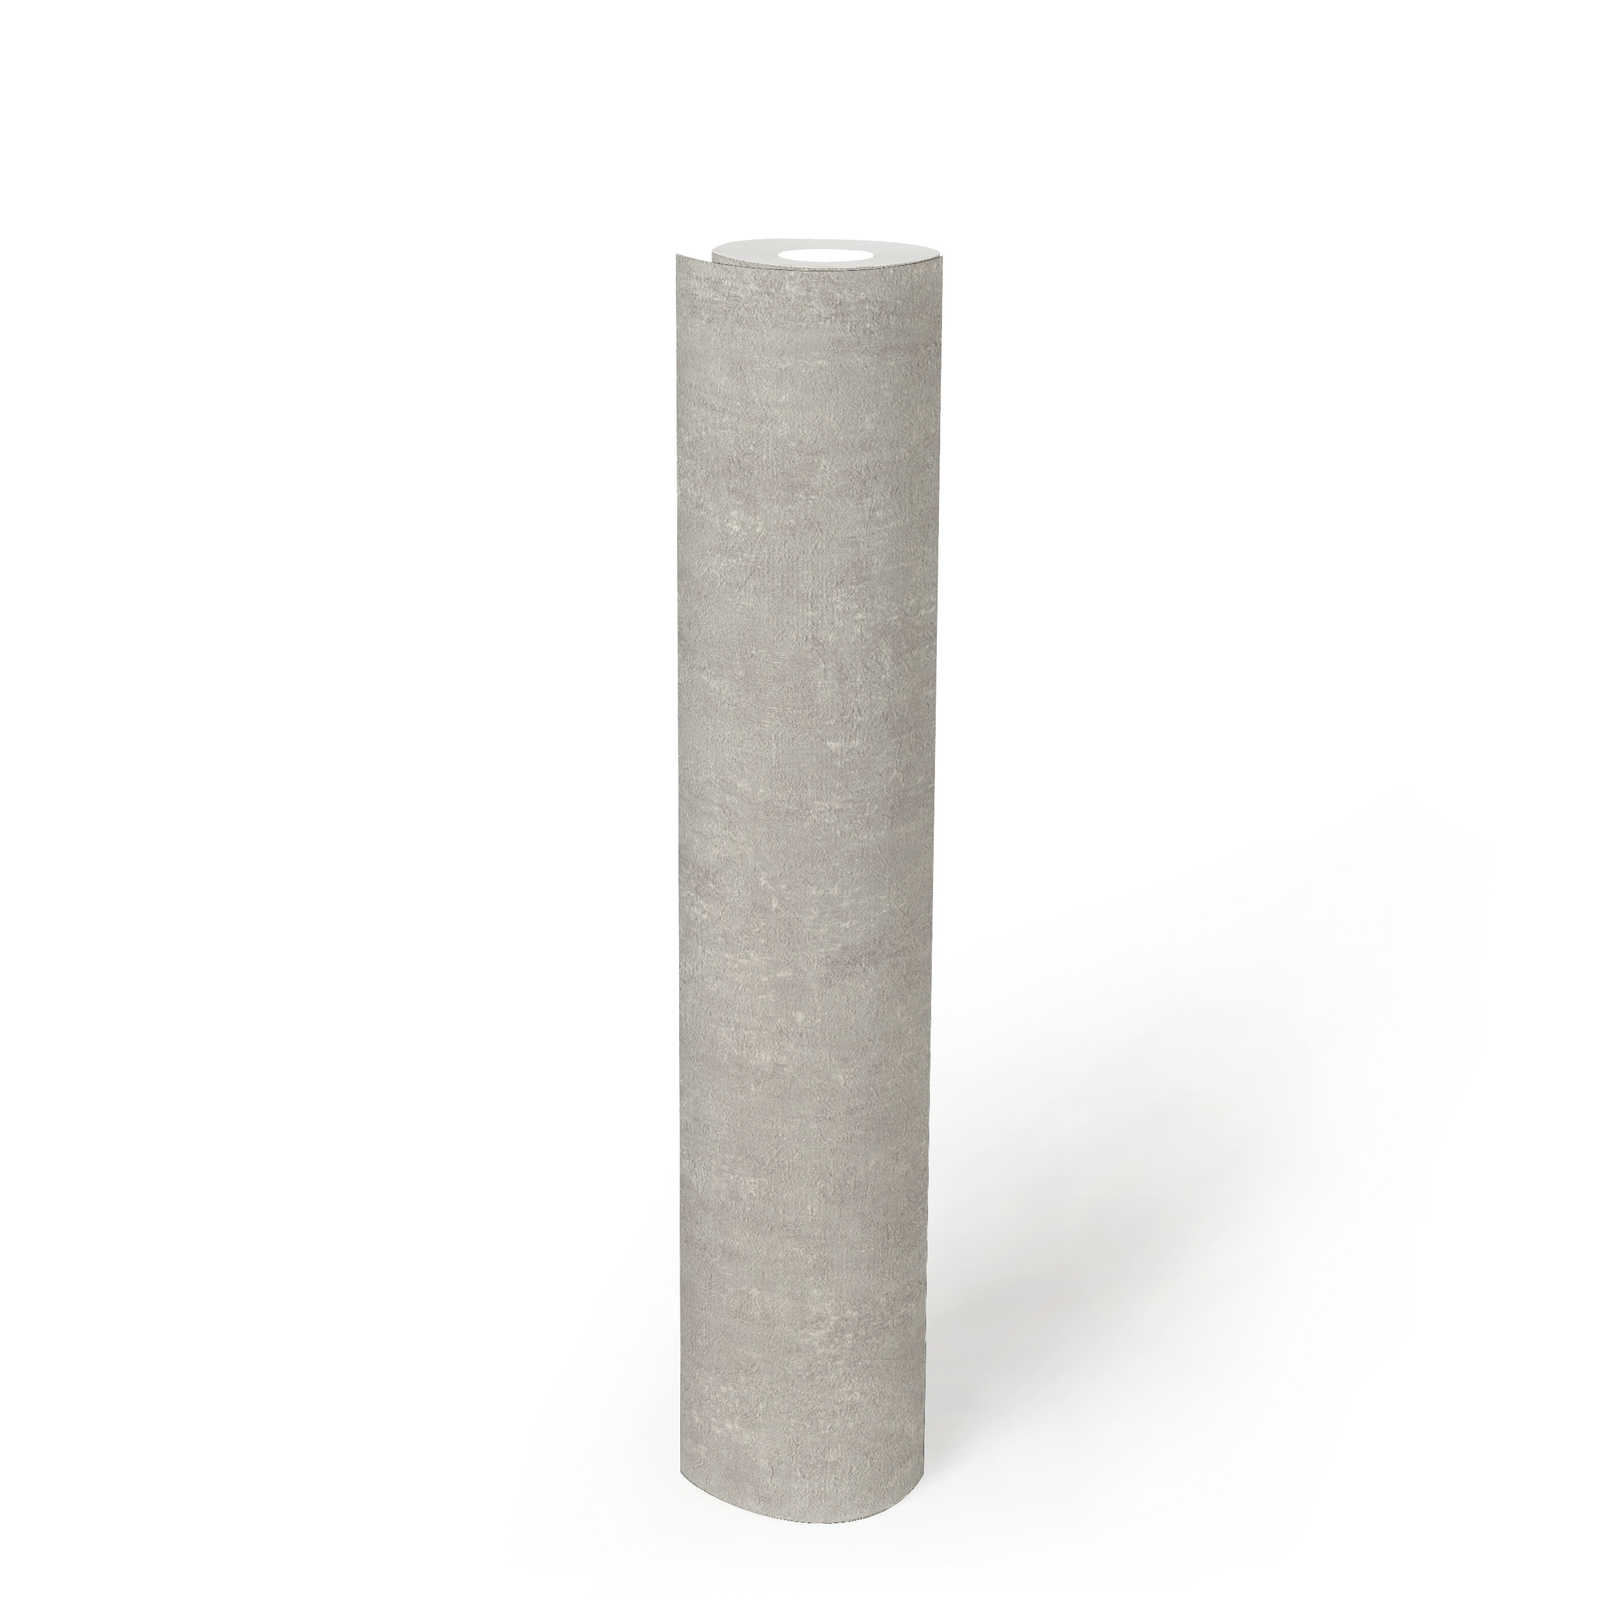             Carta da parati in tessuto non tessuto struttura in cemento grigio chiaro screziato - grigio
        